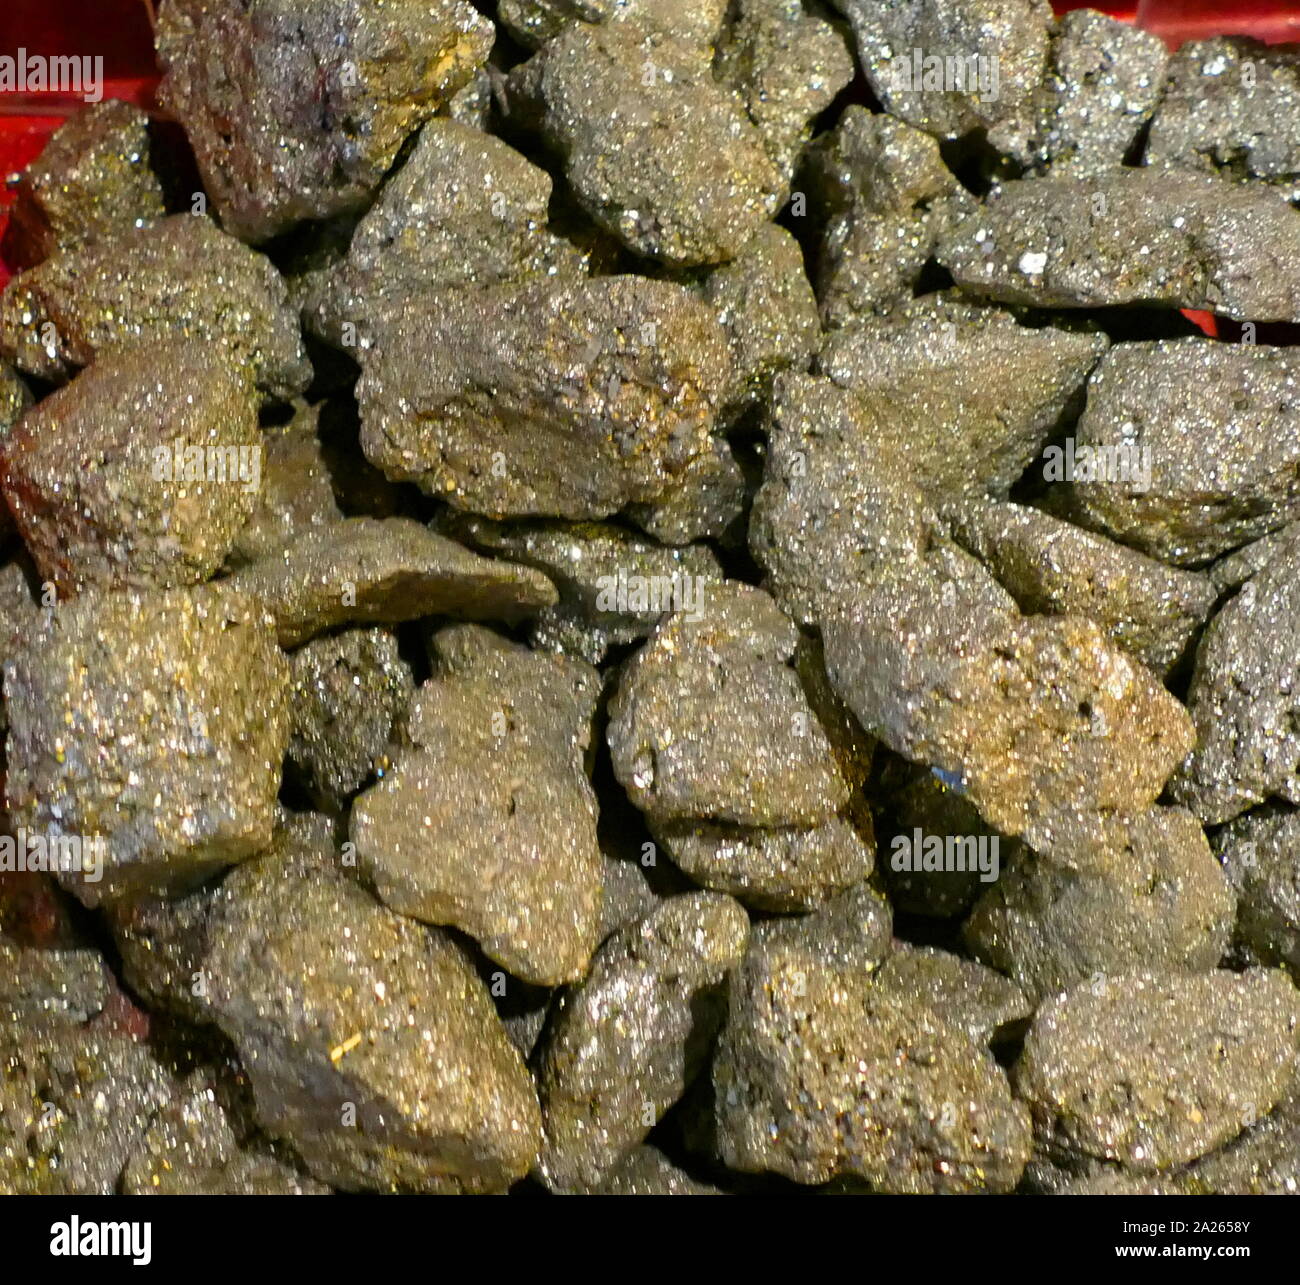 Le minéral de la pyrite, ou de la pyrite de fer, également connu sous le nom de fool's gold, est un sulfure de fer dont la formule chimique est FeS2 (sulfure de fer(II)). La pyrite est considéré comme le plus commun des minéraux sulfurés. Banque D'Images